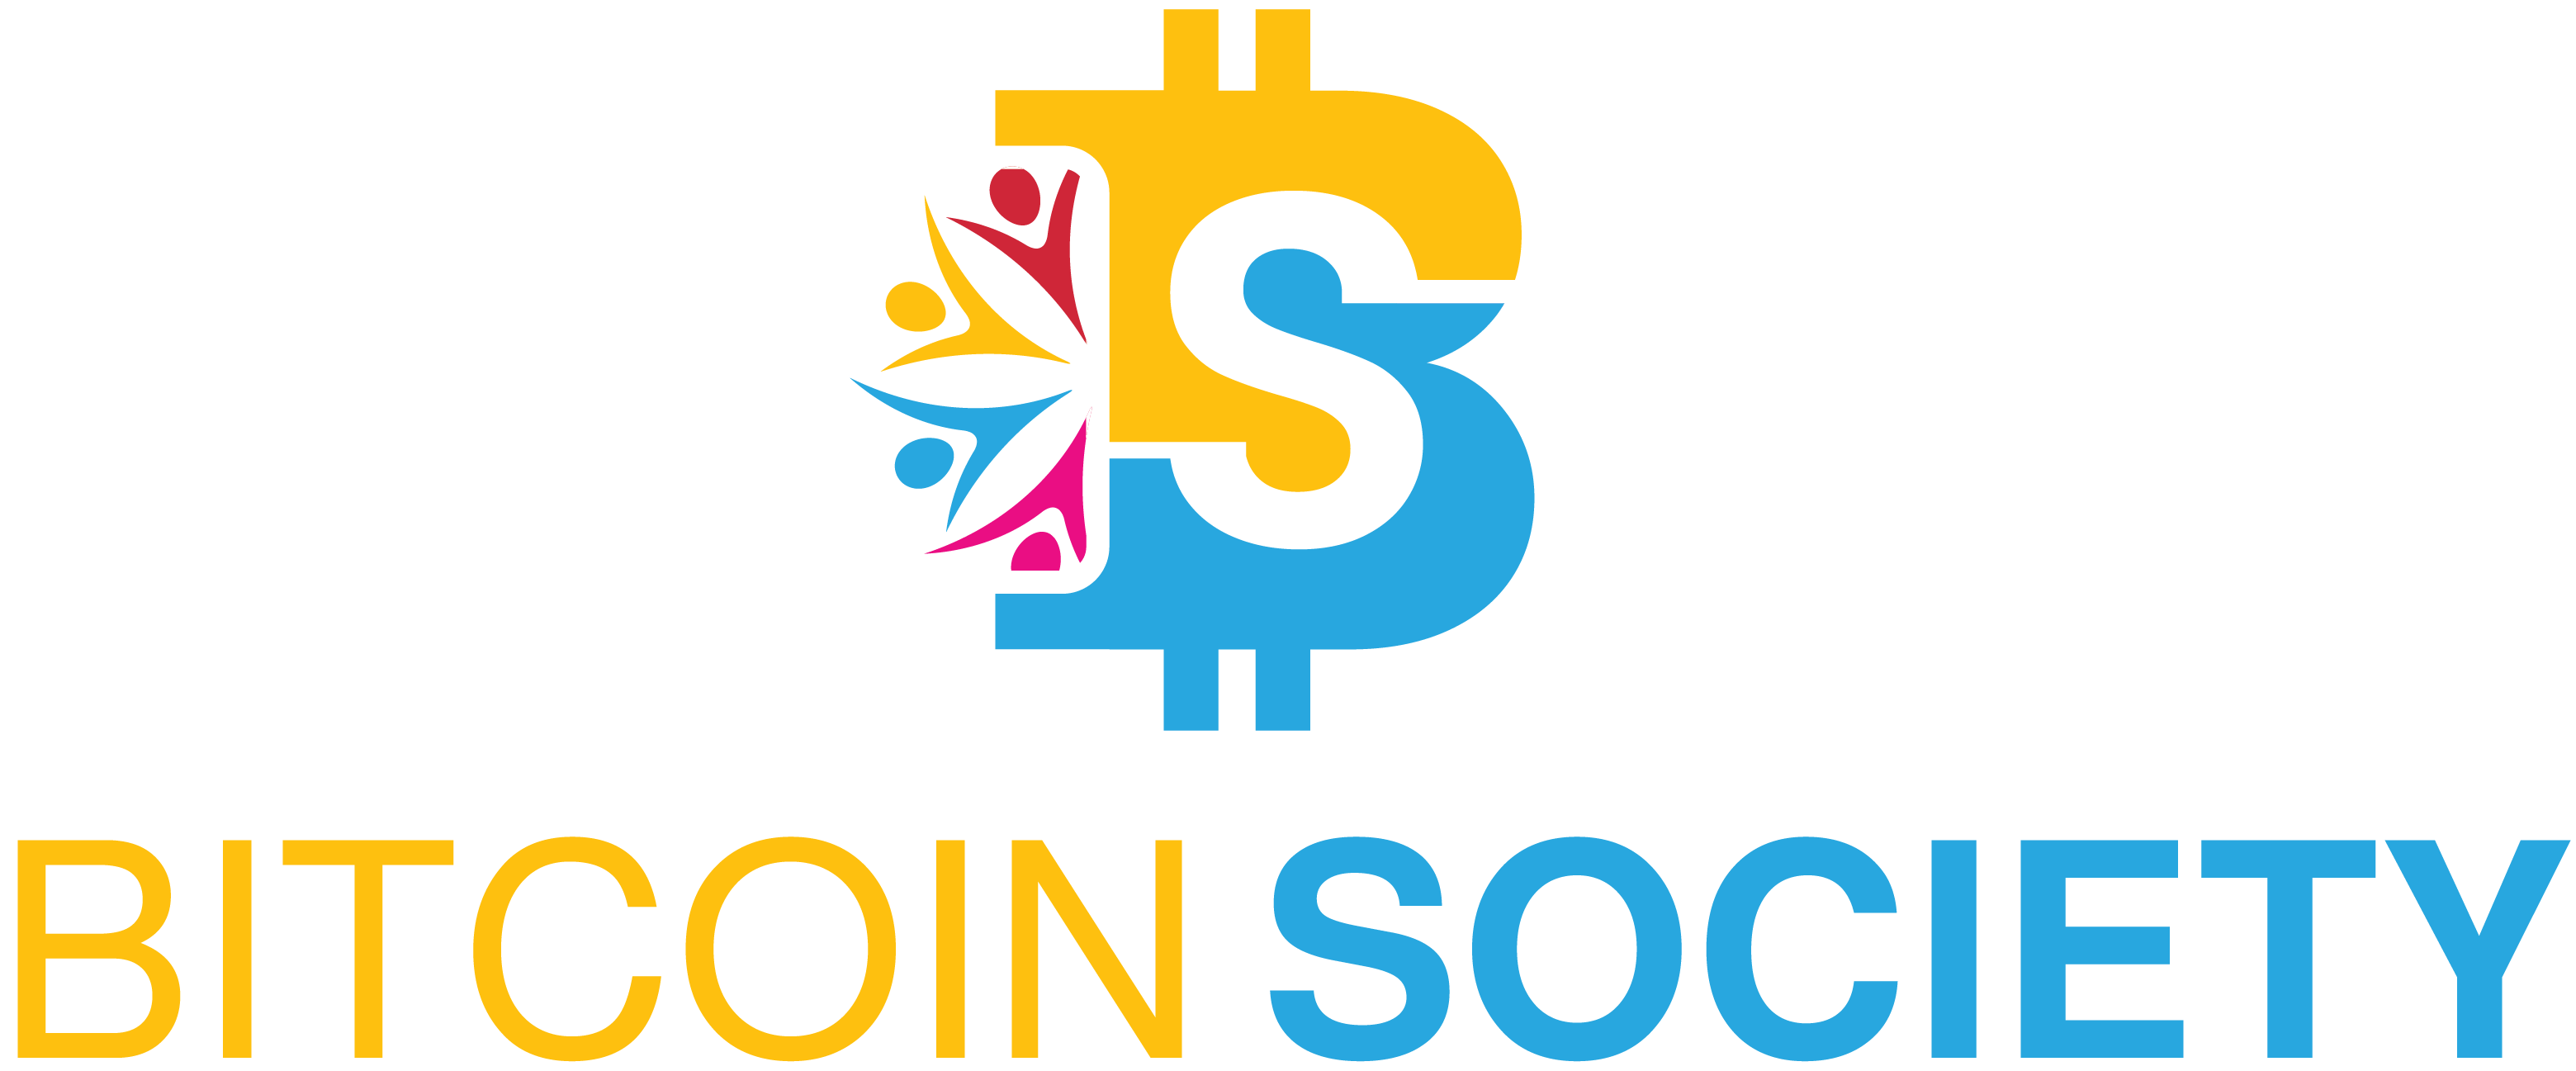 Bitcoin Society - INSCRIVEZ-VOUS GRATUITEMENT DÈS MAINTENANT